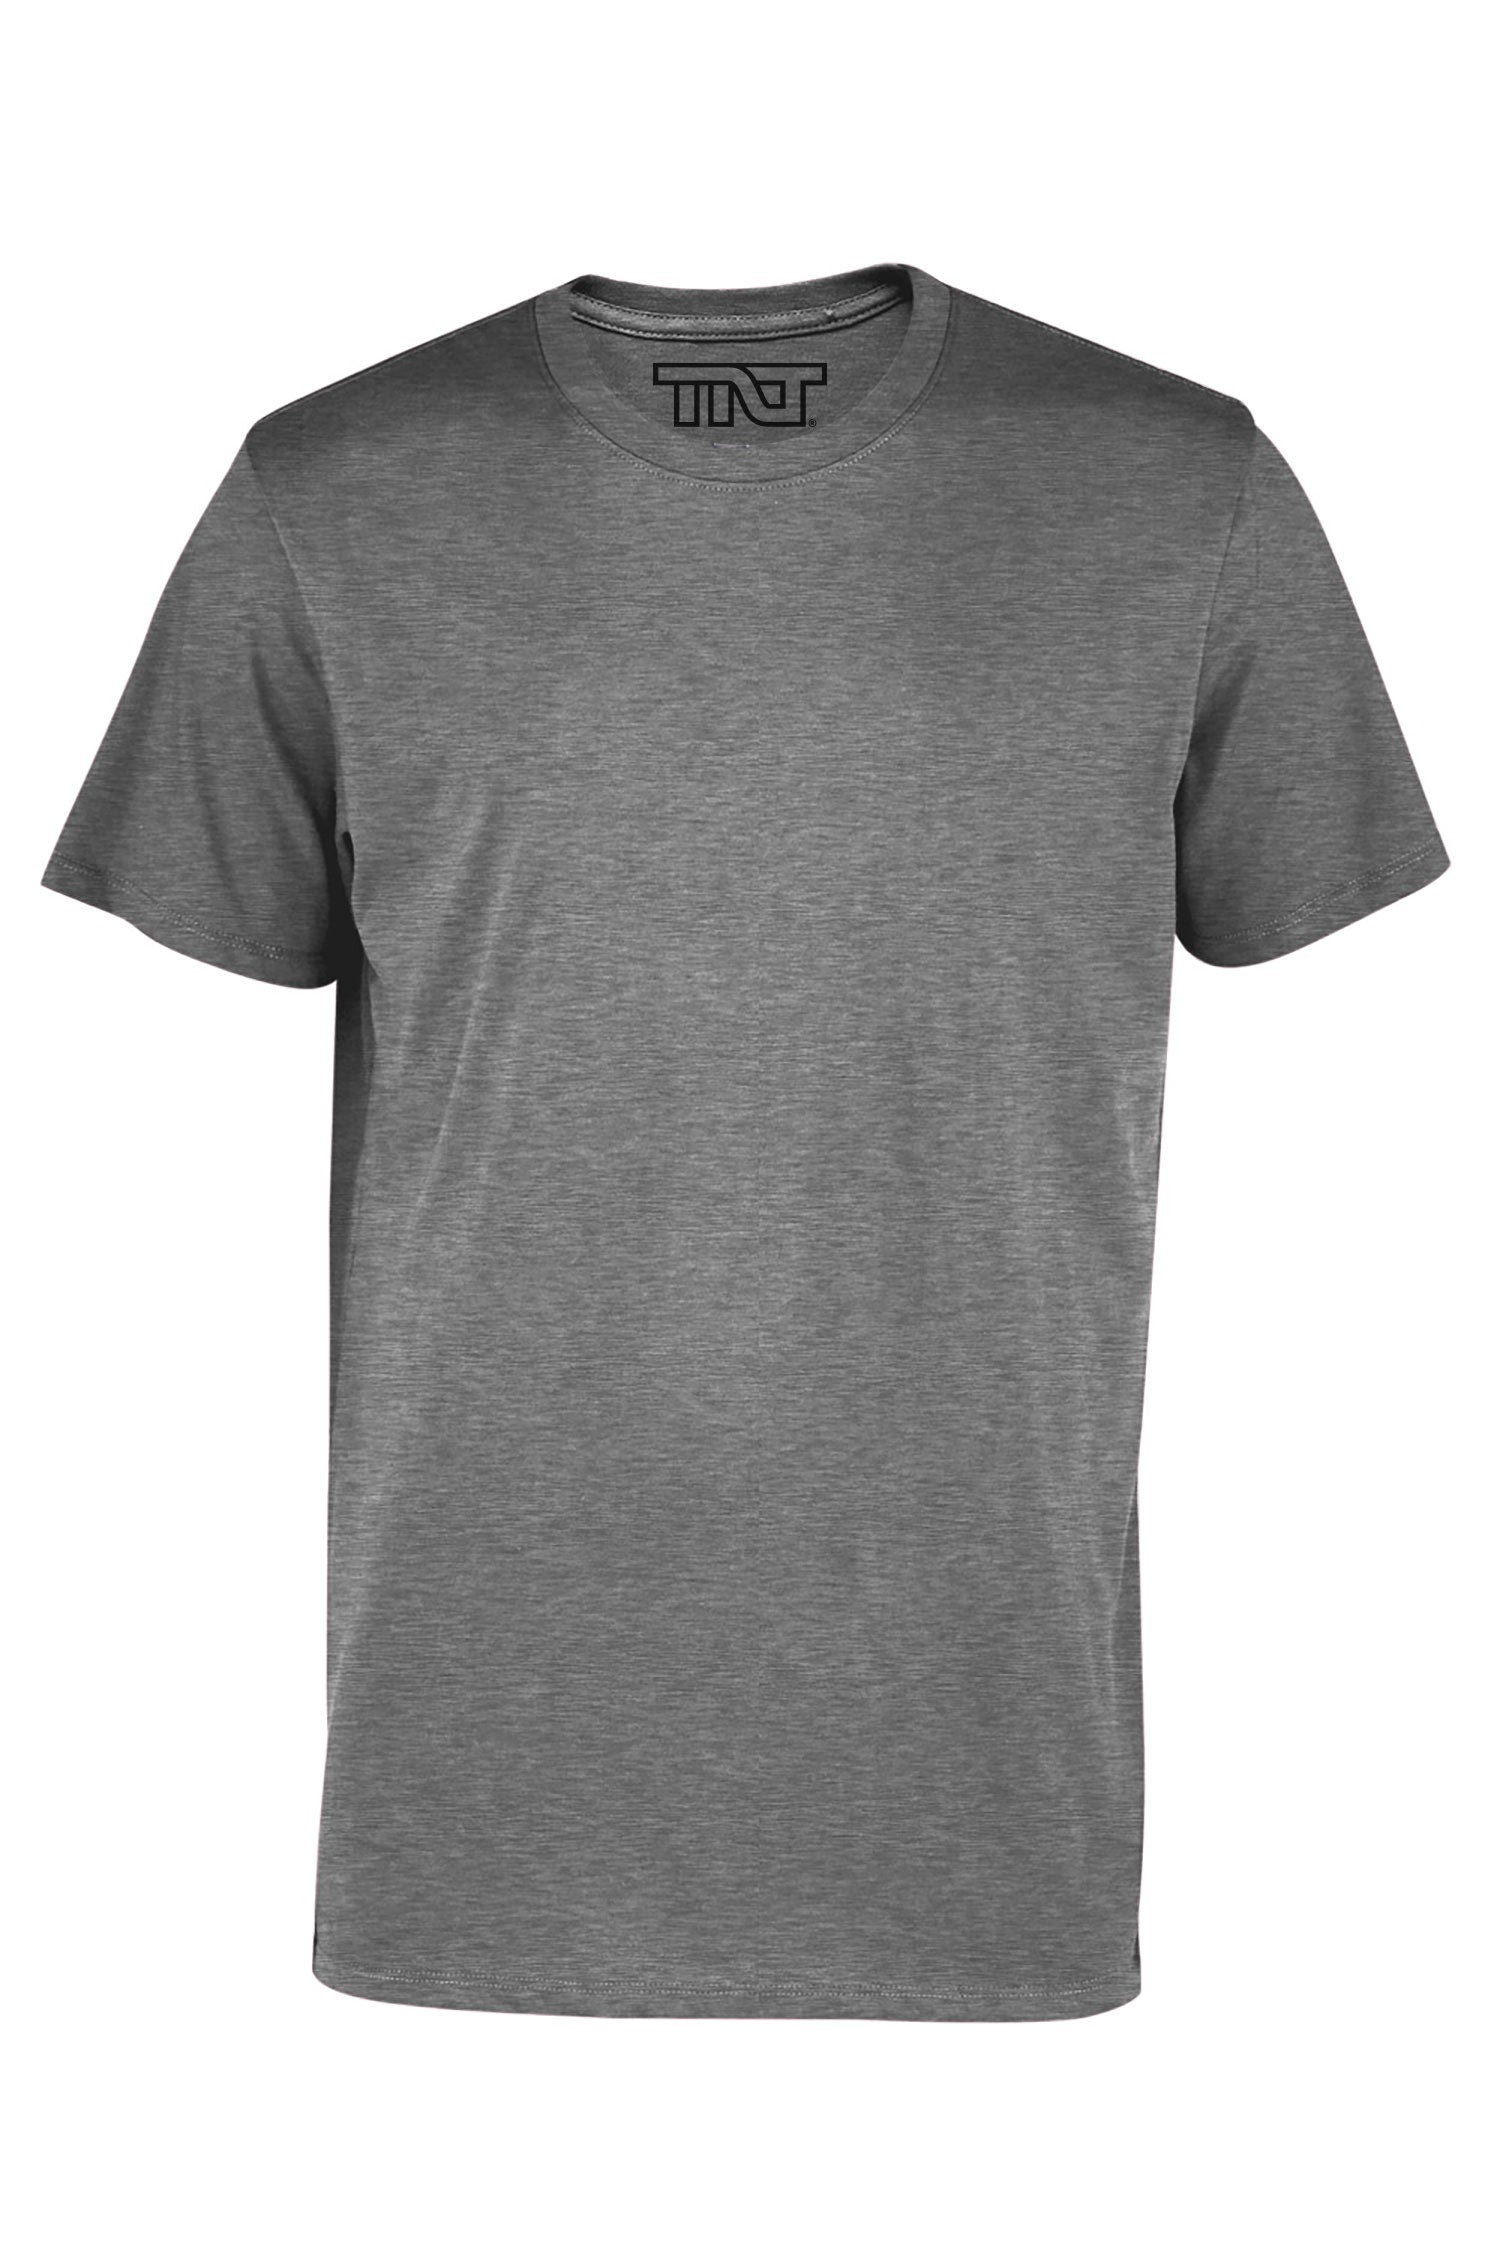 Elliptical SS Tee Shirt - Grey Heather (Size XL), Men's